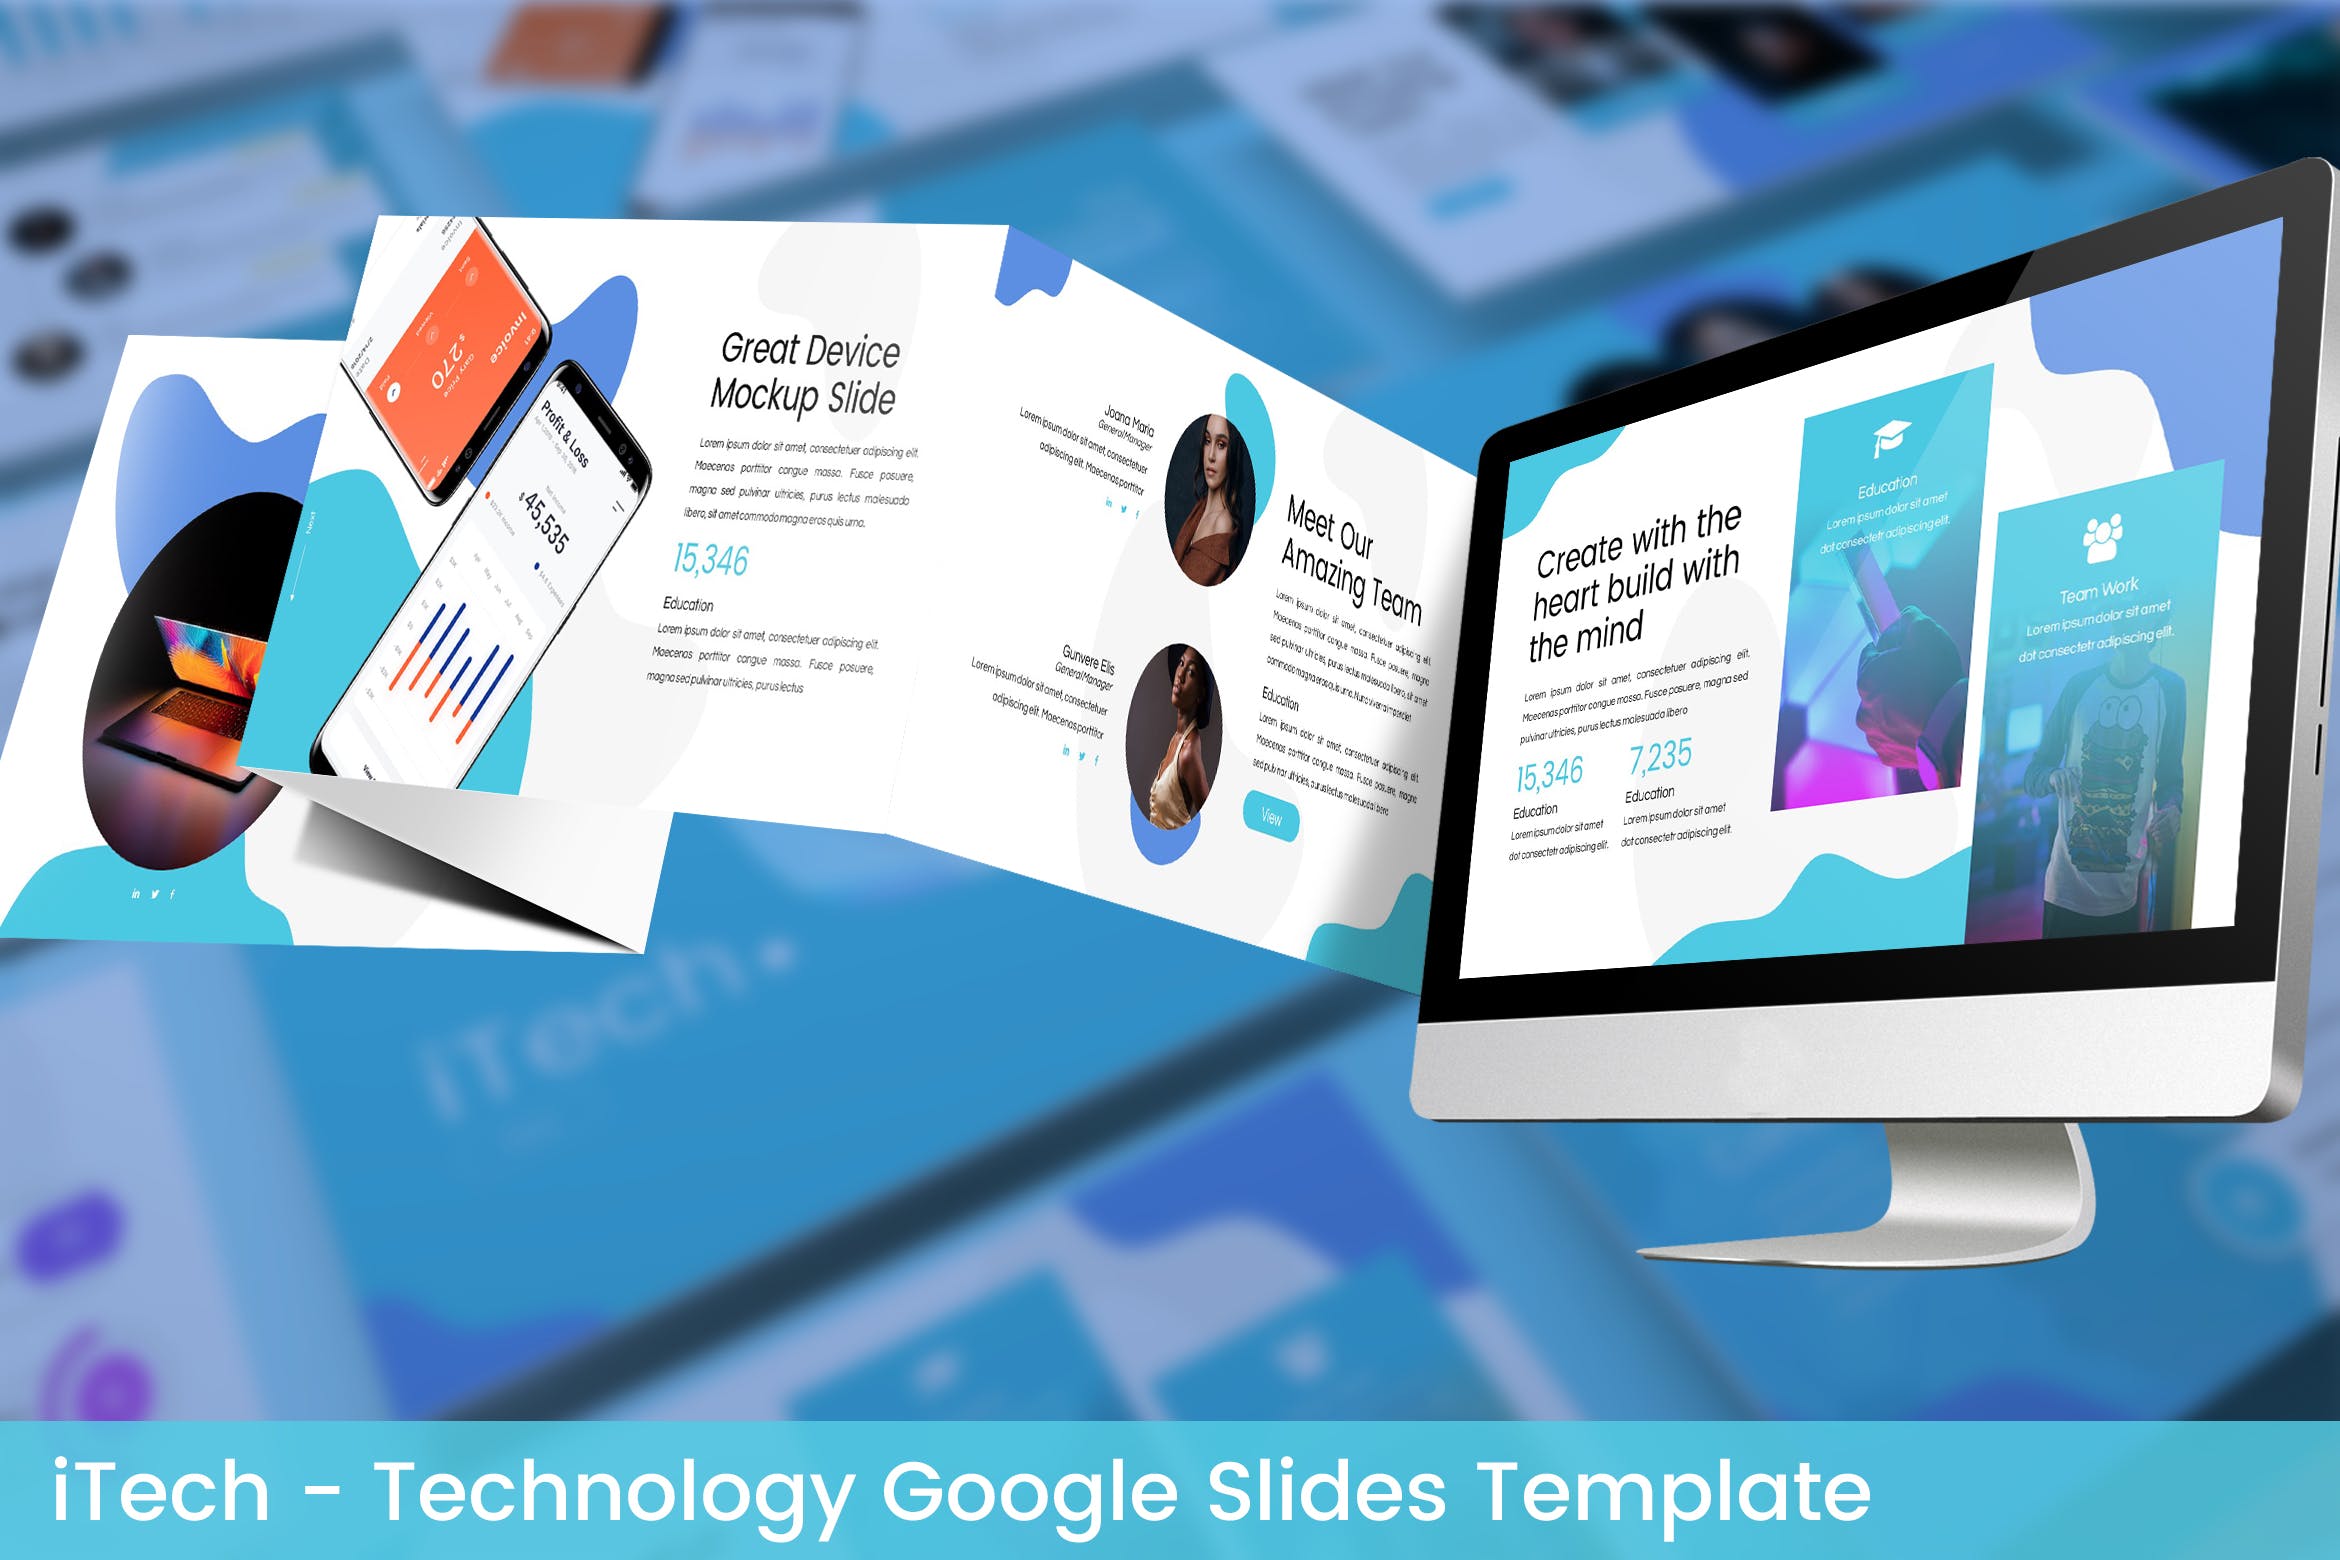 互联网科技公司简介素材天下精选谷歌演示模板 iTech – Technology Google Slides Template插图